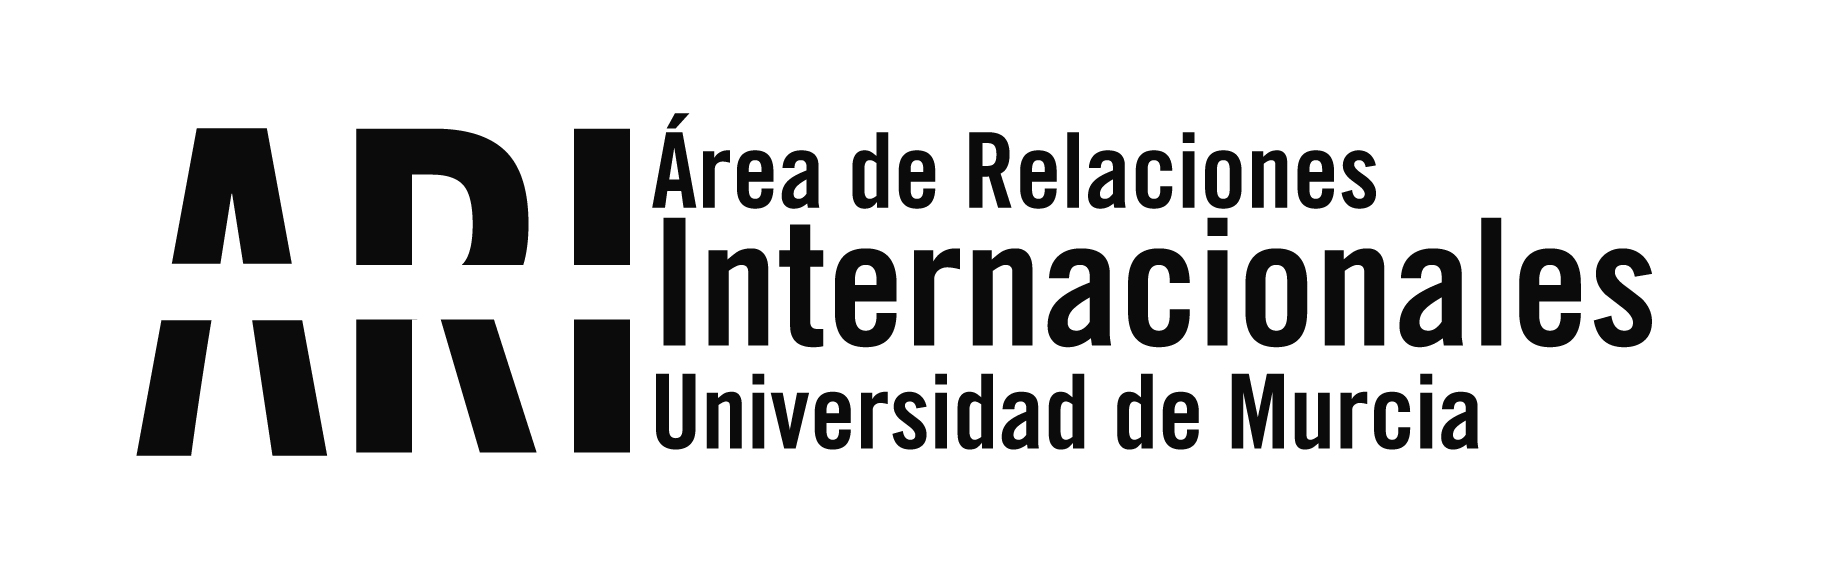 La Universidad de Murcia acoge el XII Congreso de ACLES - Área de Relaciones Internacionales